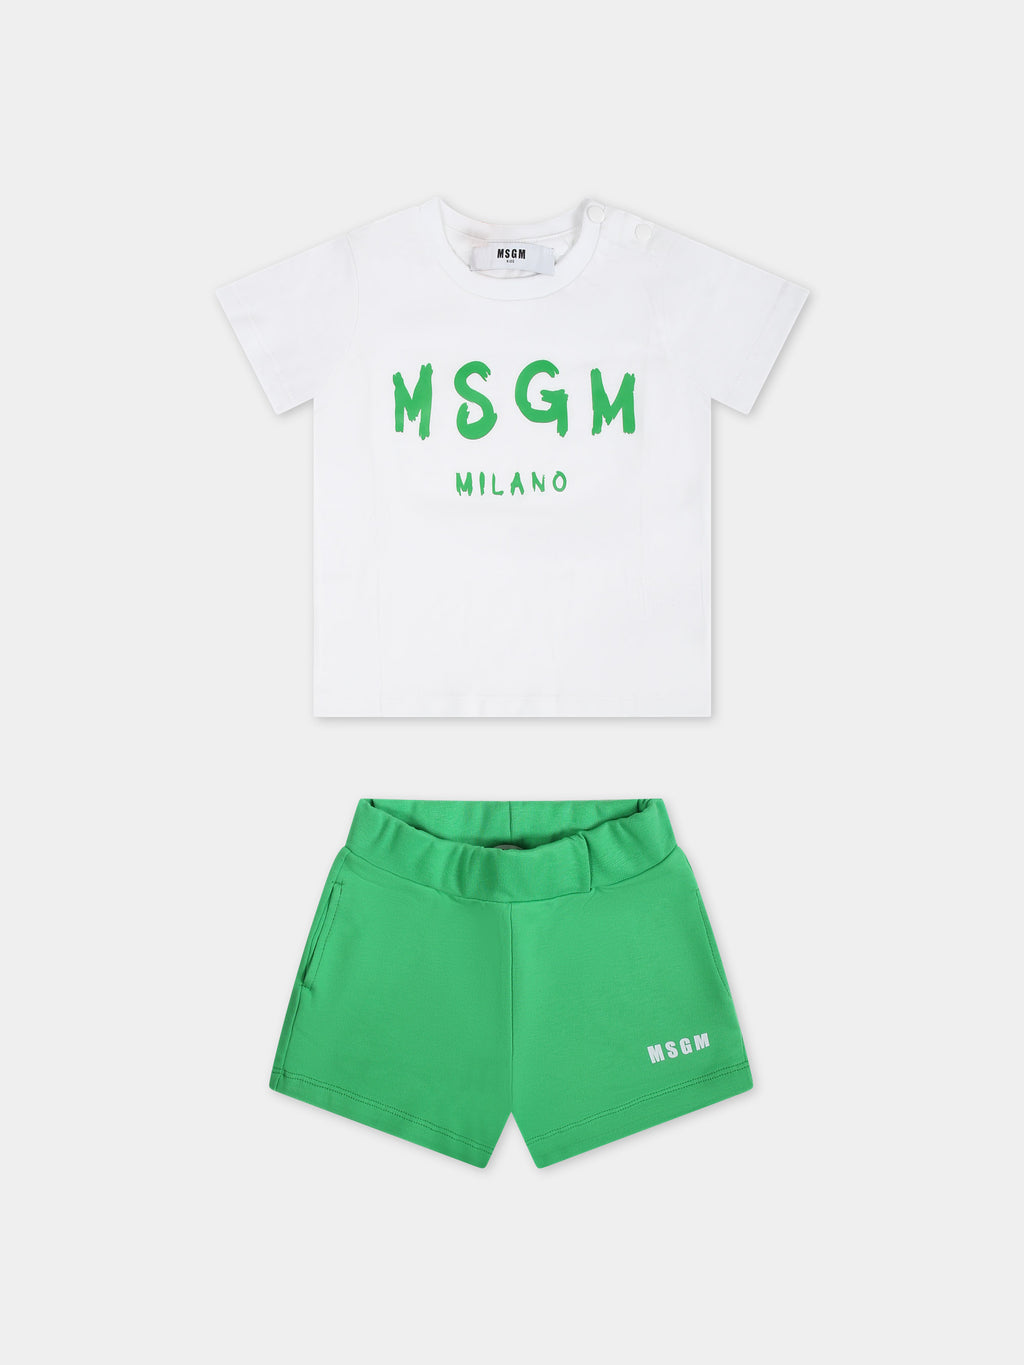 Completo verde per neonati con logo